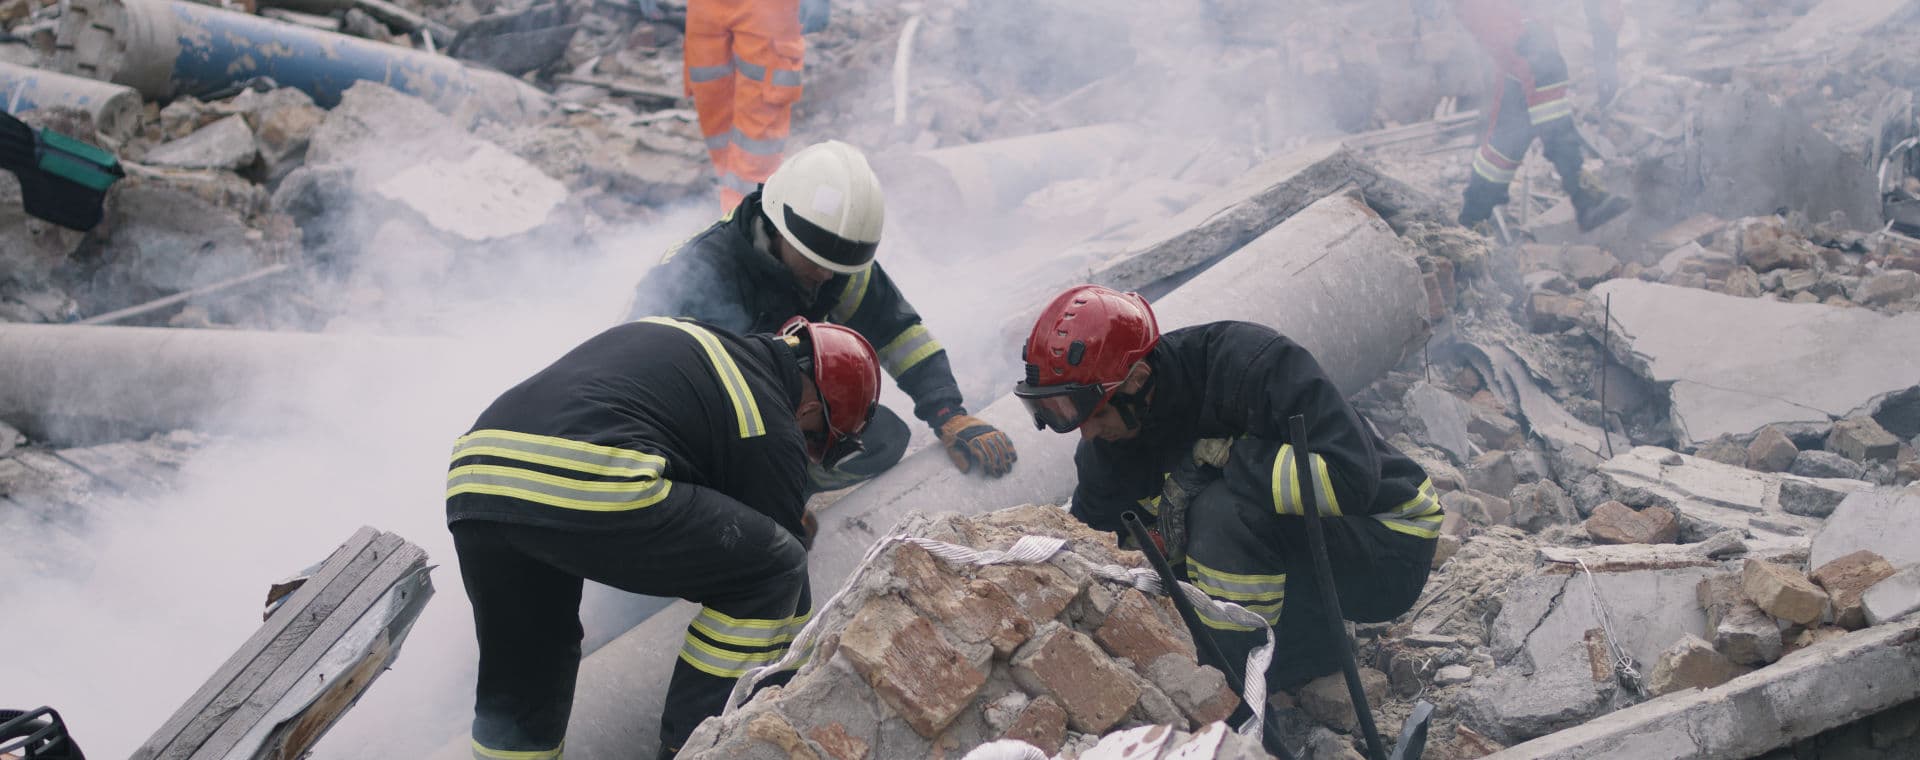 Earthquake helpers in ruins | LGI